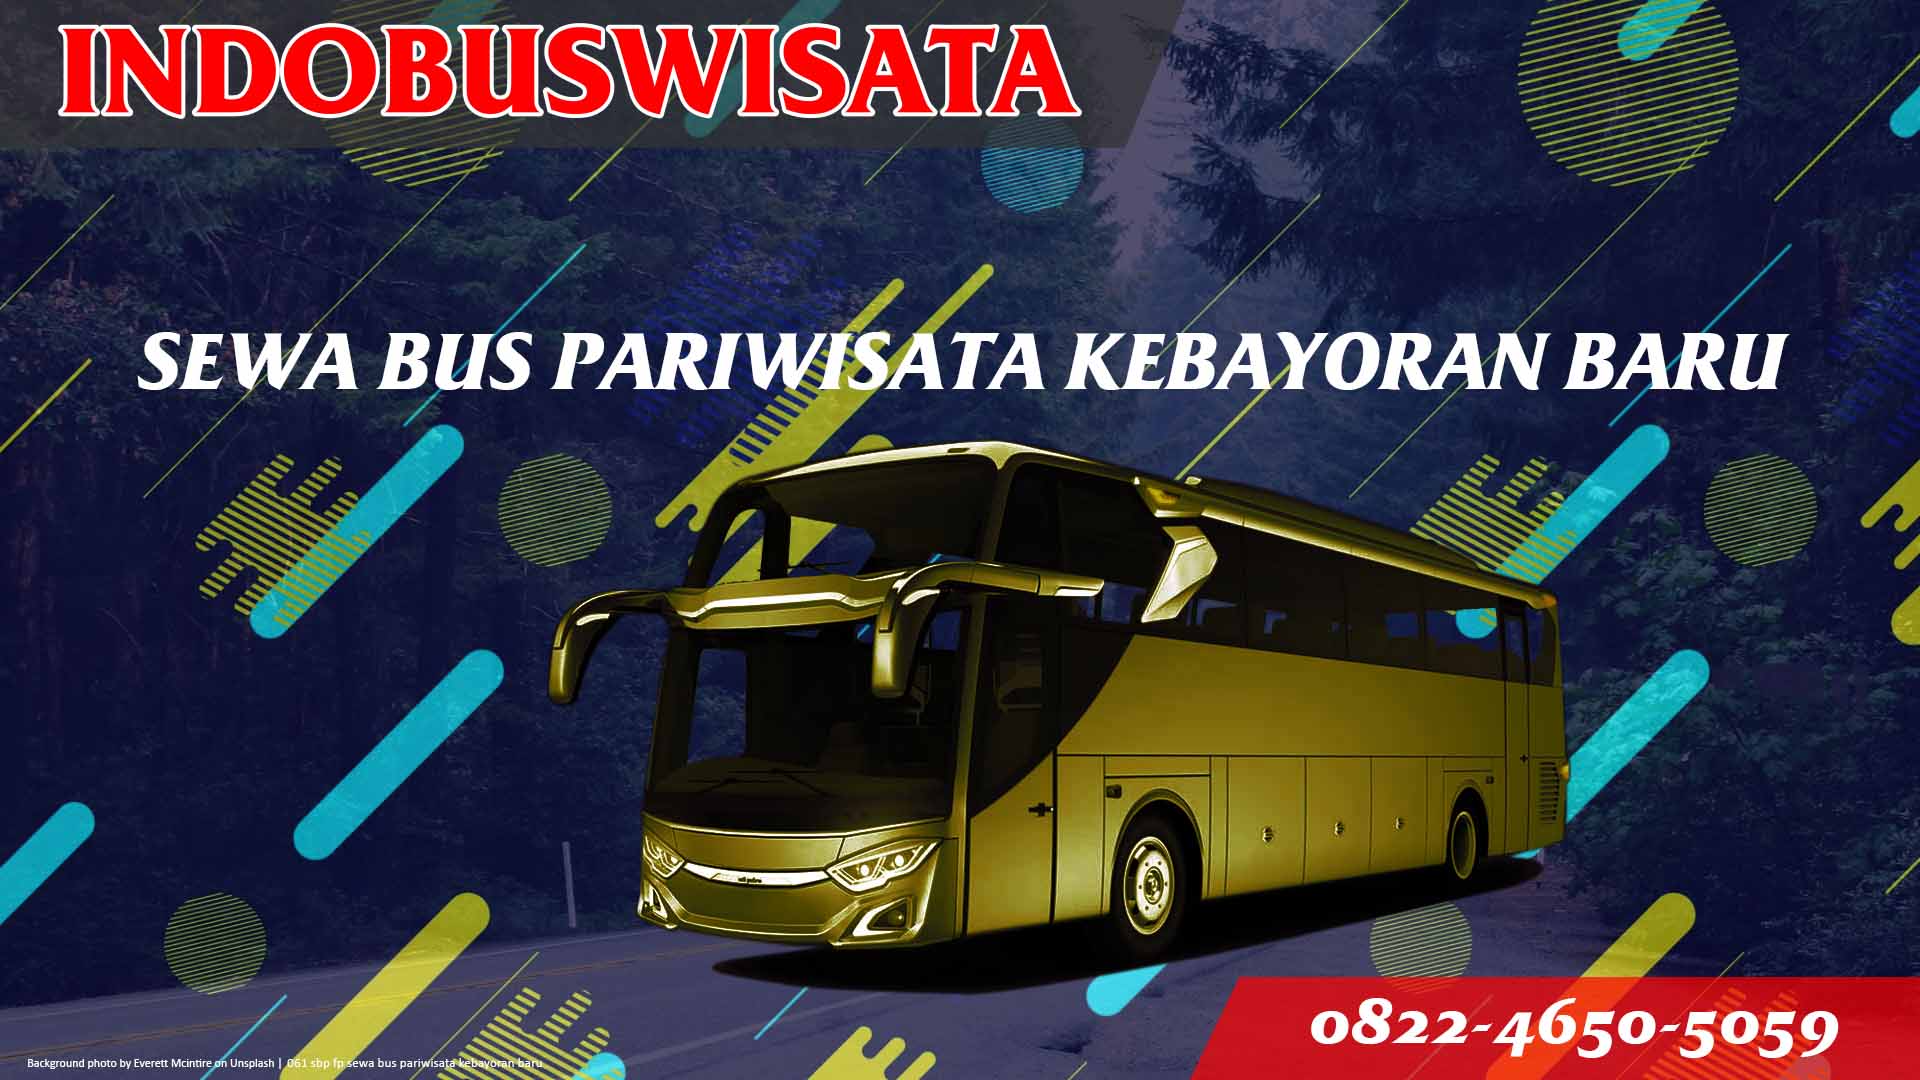 061 Sbp Fp Sewa Bus Pariwisata Kebayoran Baru Indobuswisata